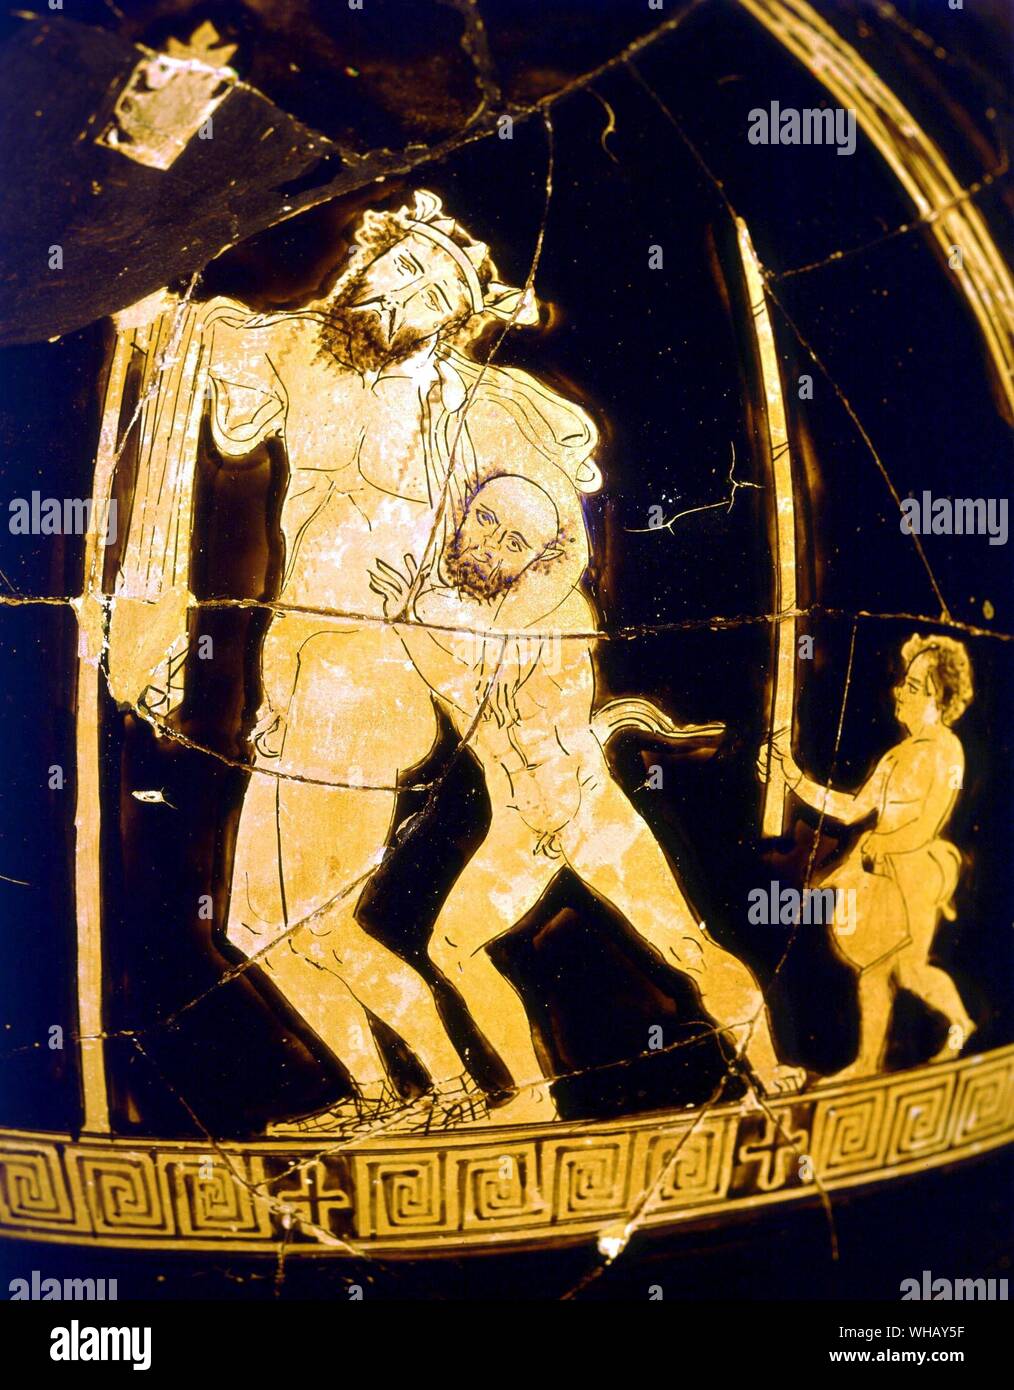 Il dionisiaco vaso fine del V secolo A.C. Dioniso semplicemente bevuto. Gli uomini di Atene da Rex Warner, pagina 185. Foto Stock